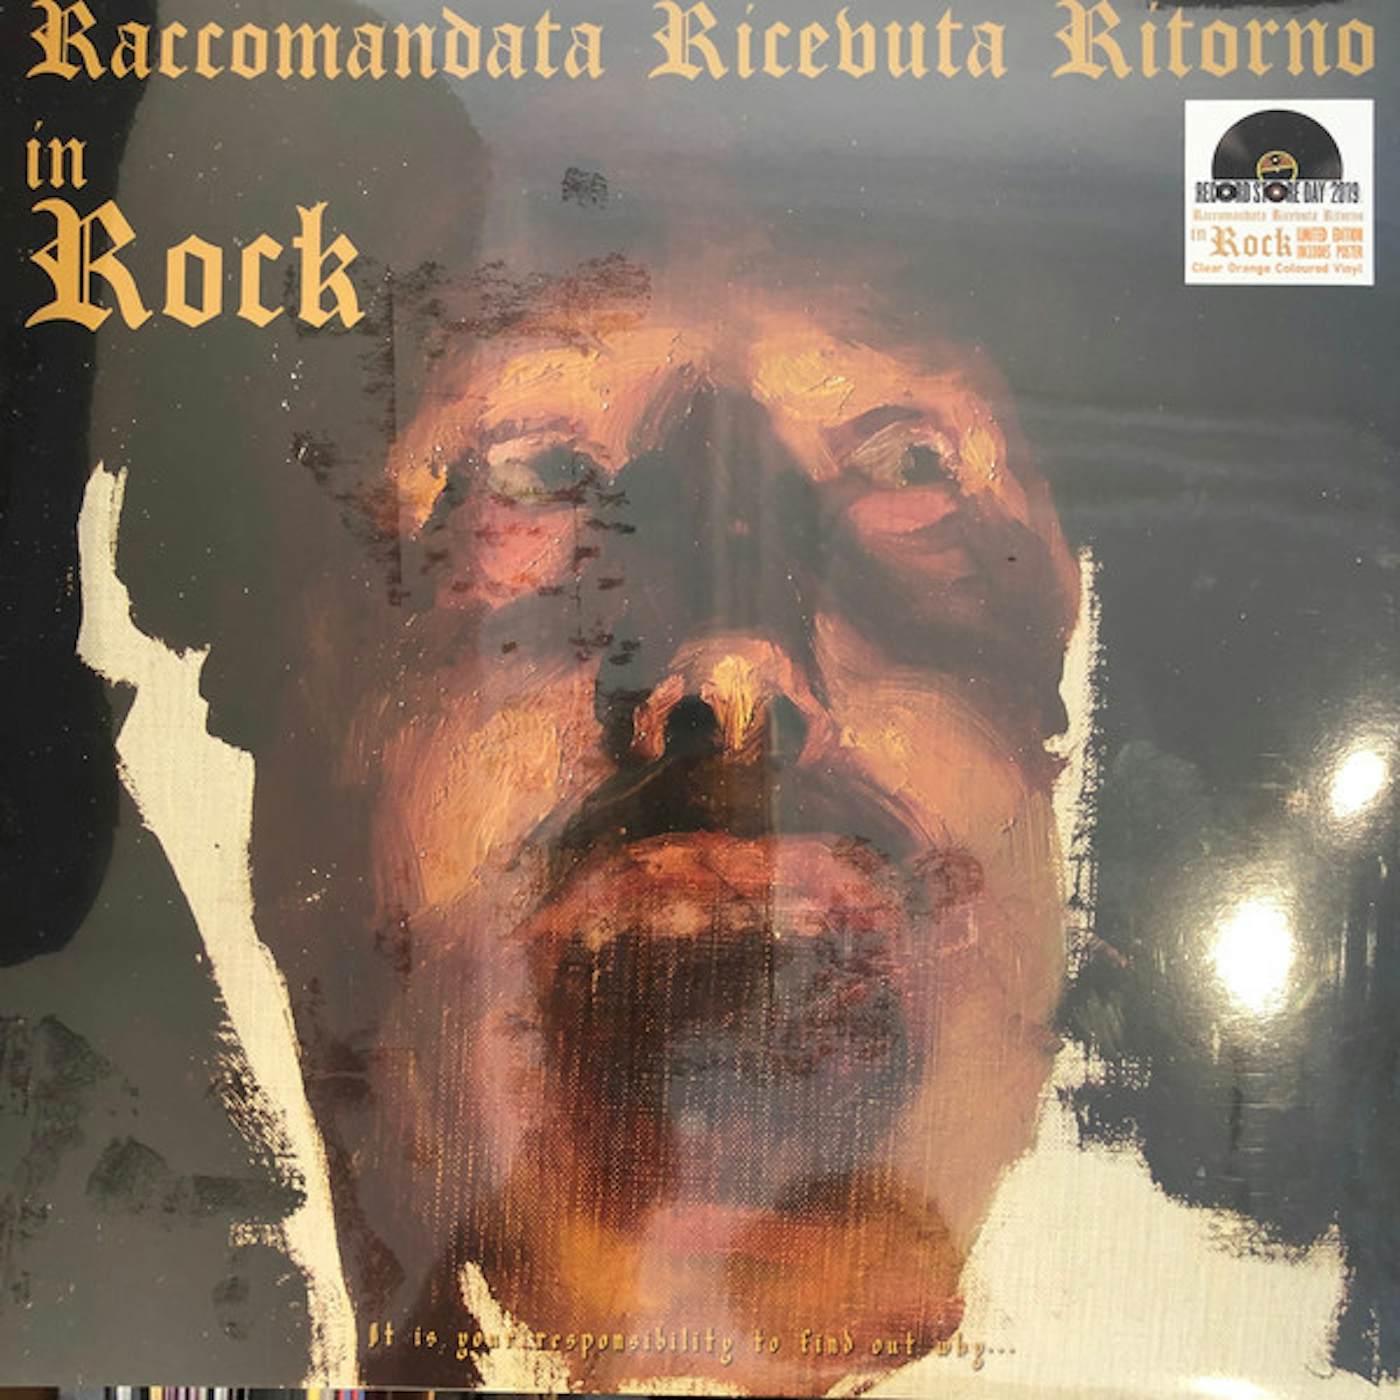 Raccomandata Ricevuta Ritorno In Rock Vinyl Record